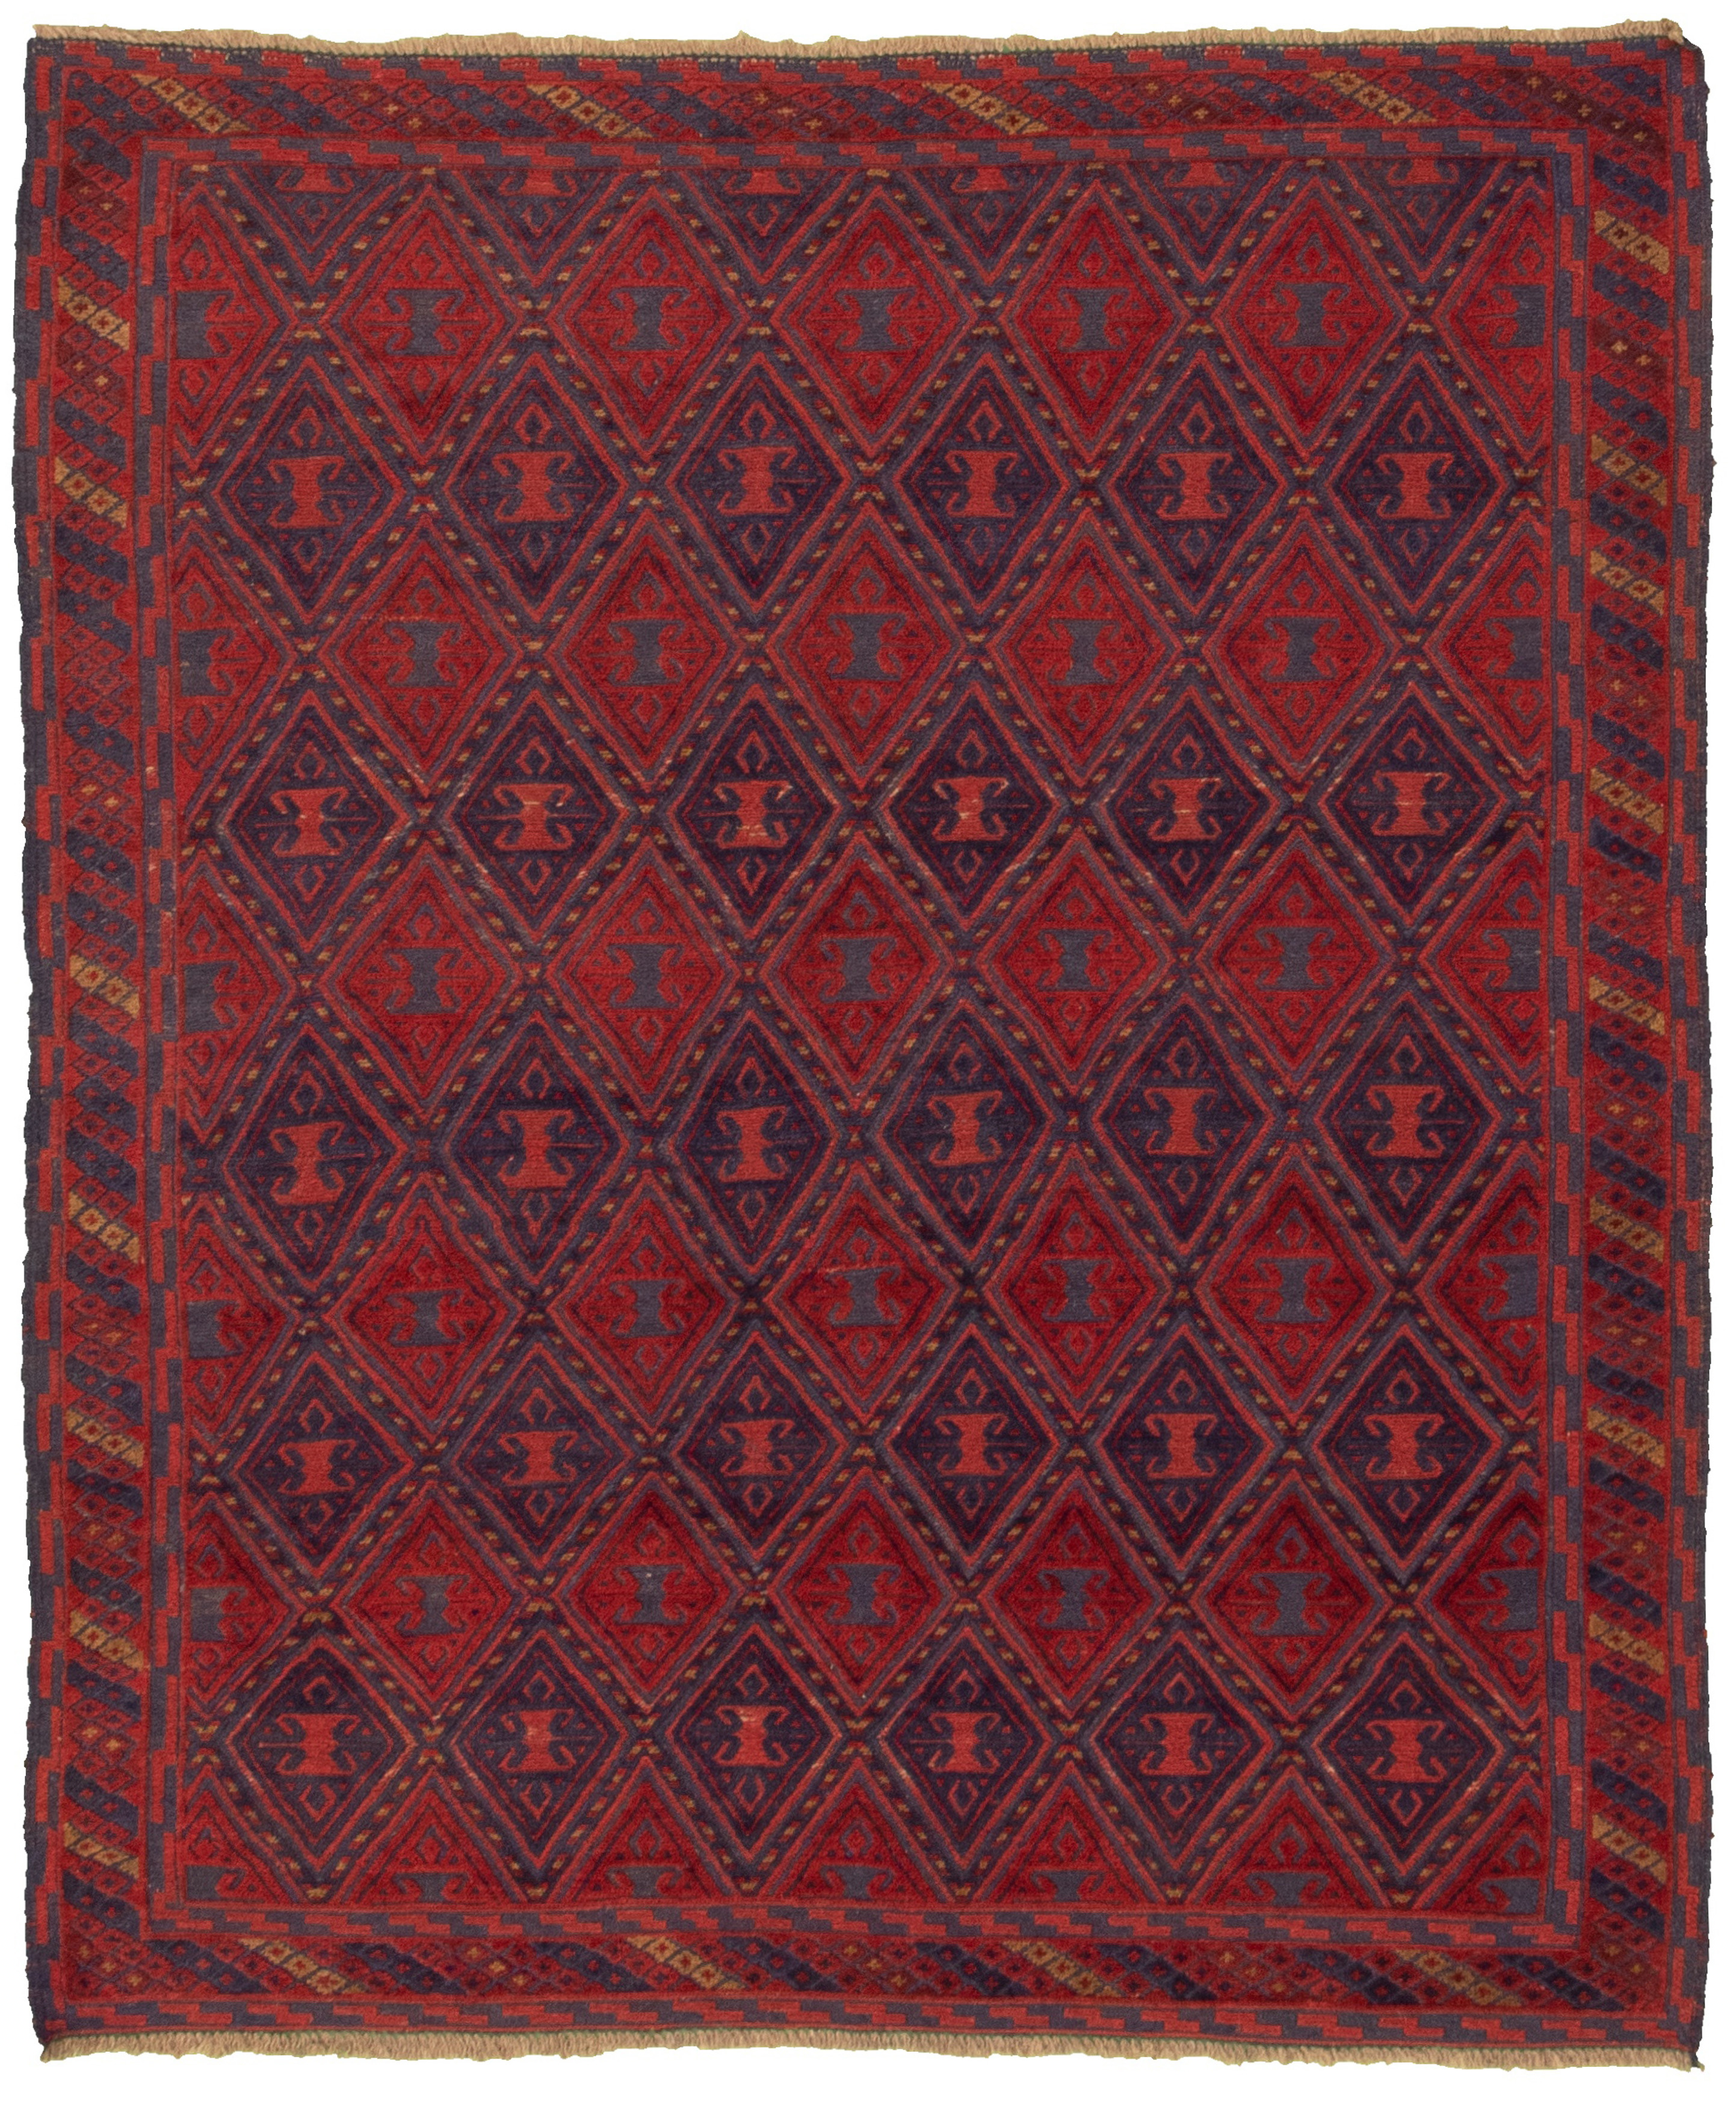 Hand-knotted Tajik Caucasian Dark Red Wool Rug 5'0" x 6'0"  Size: 5'0" x 6'0"  